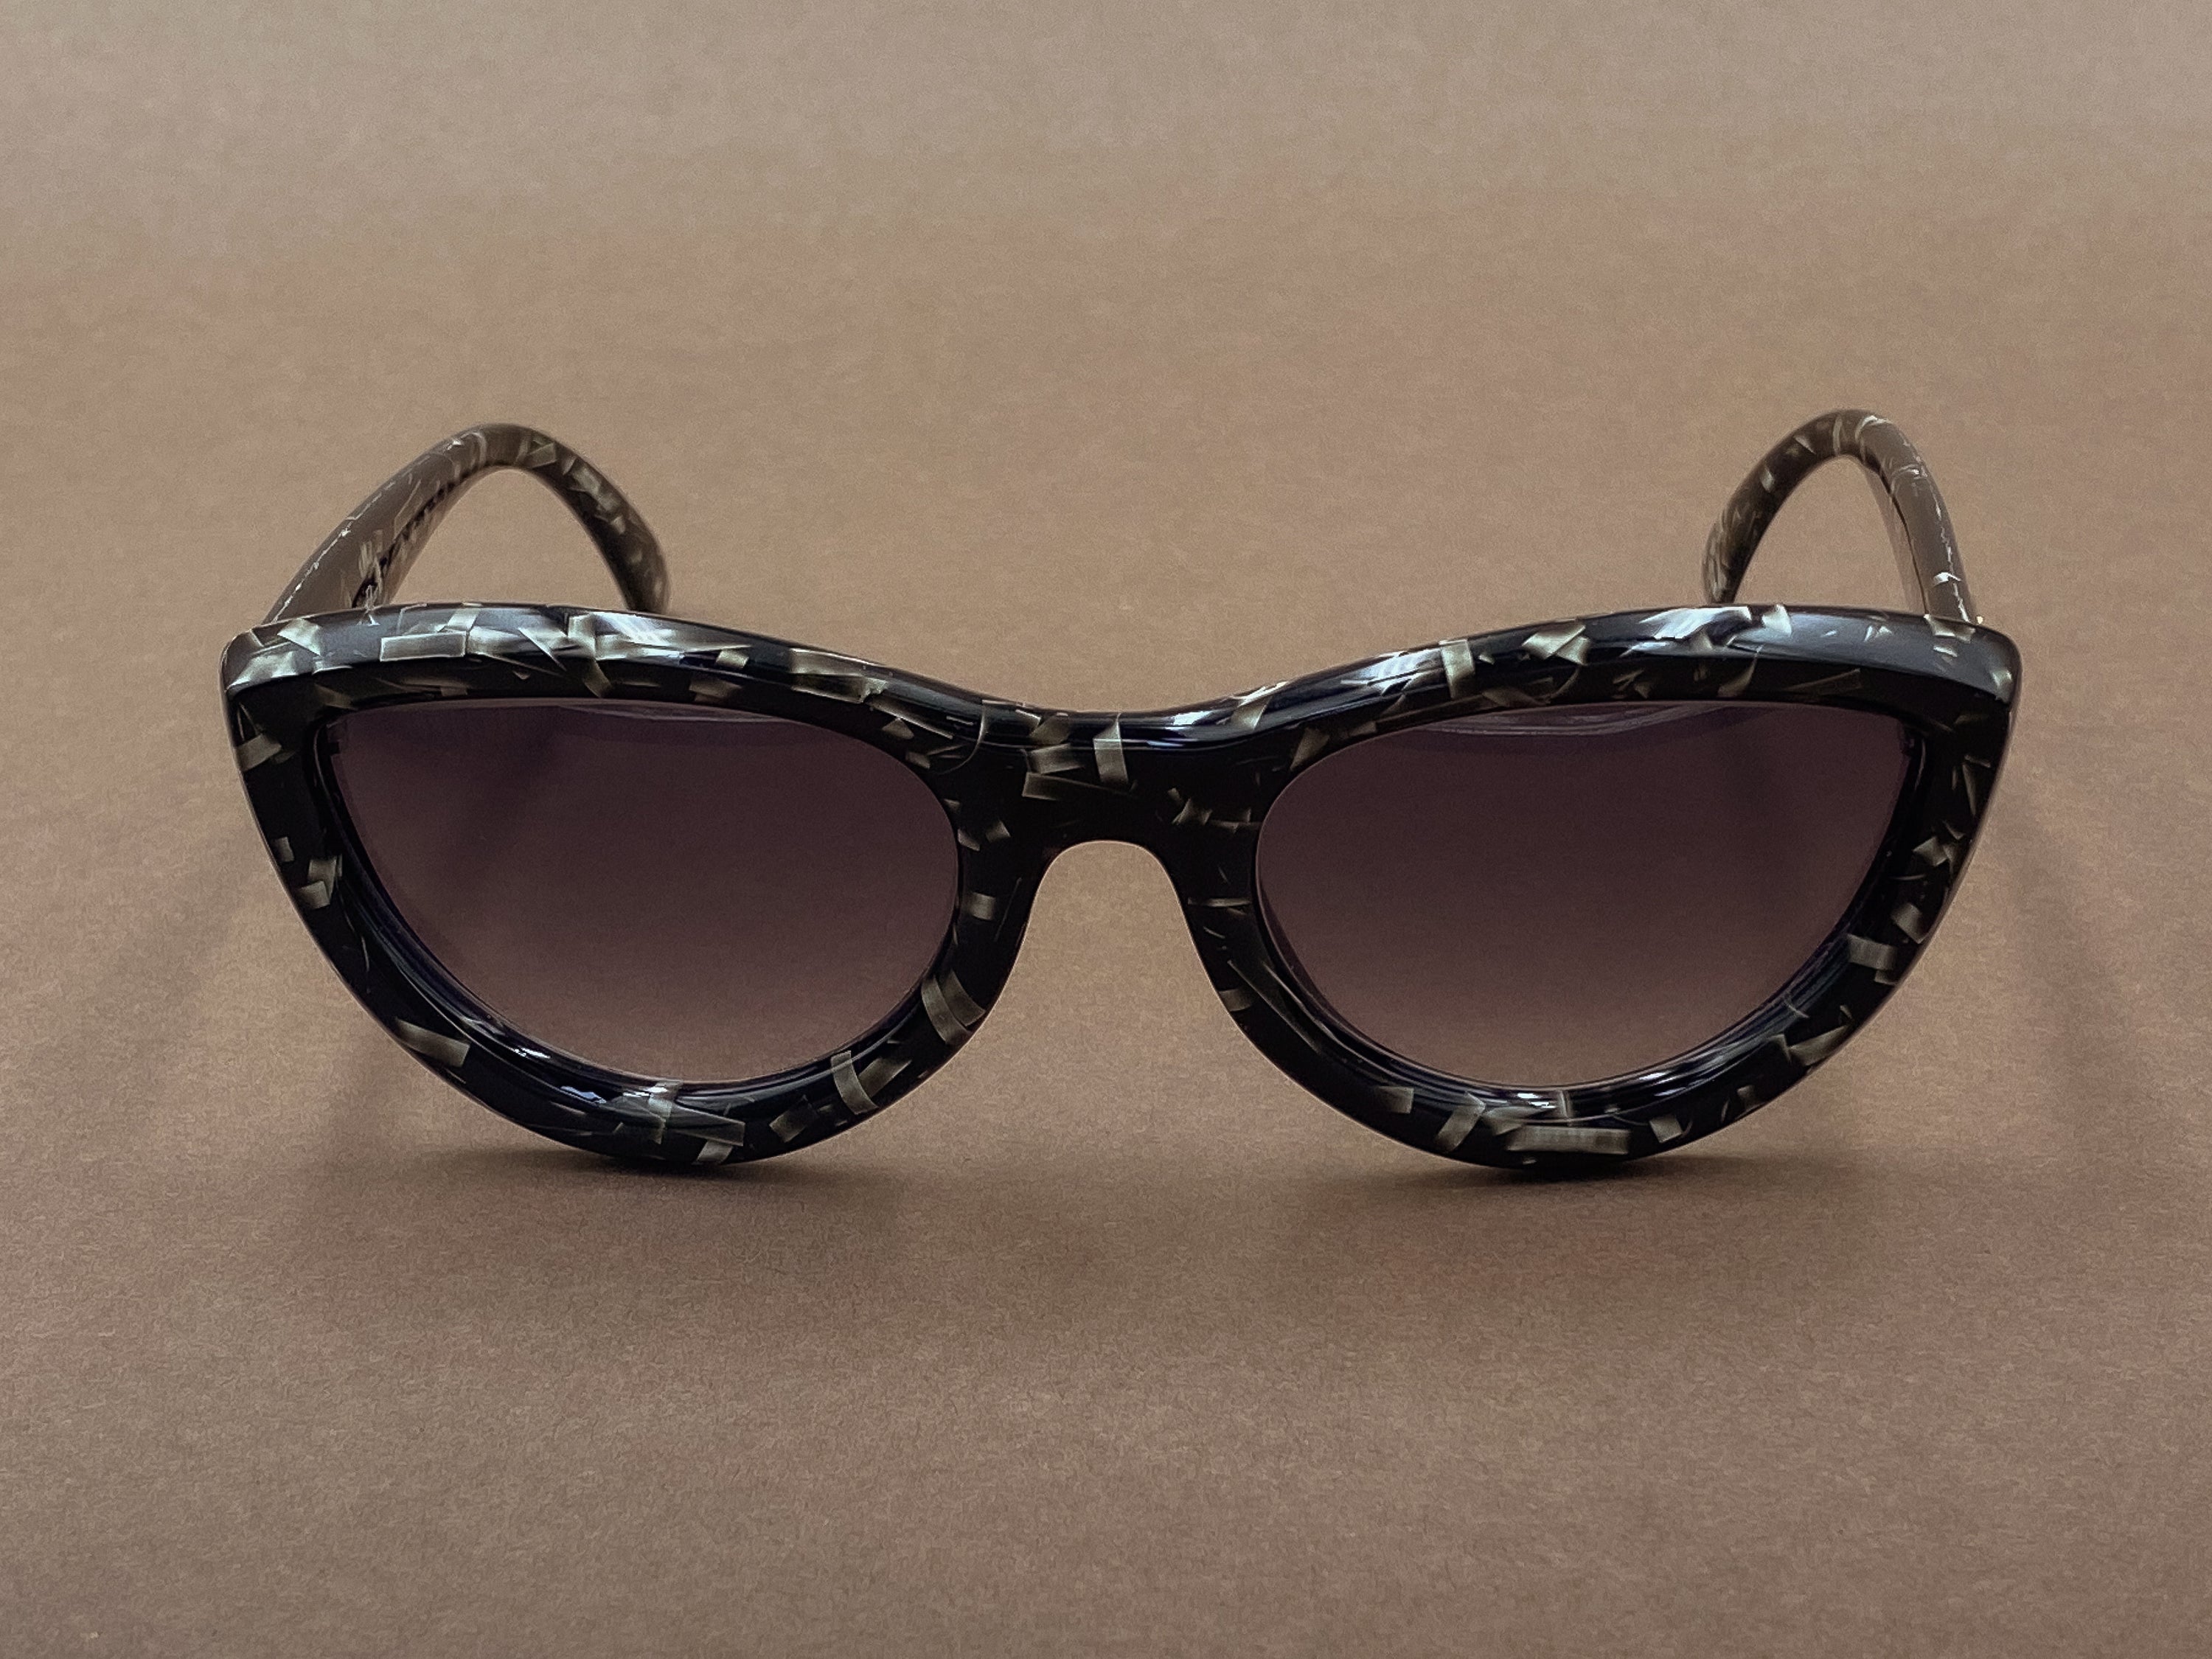 Christian Dior 2907 ladies sunglasses